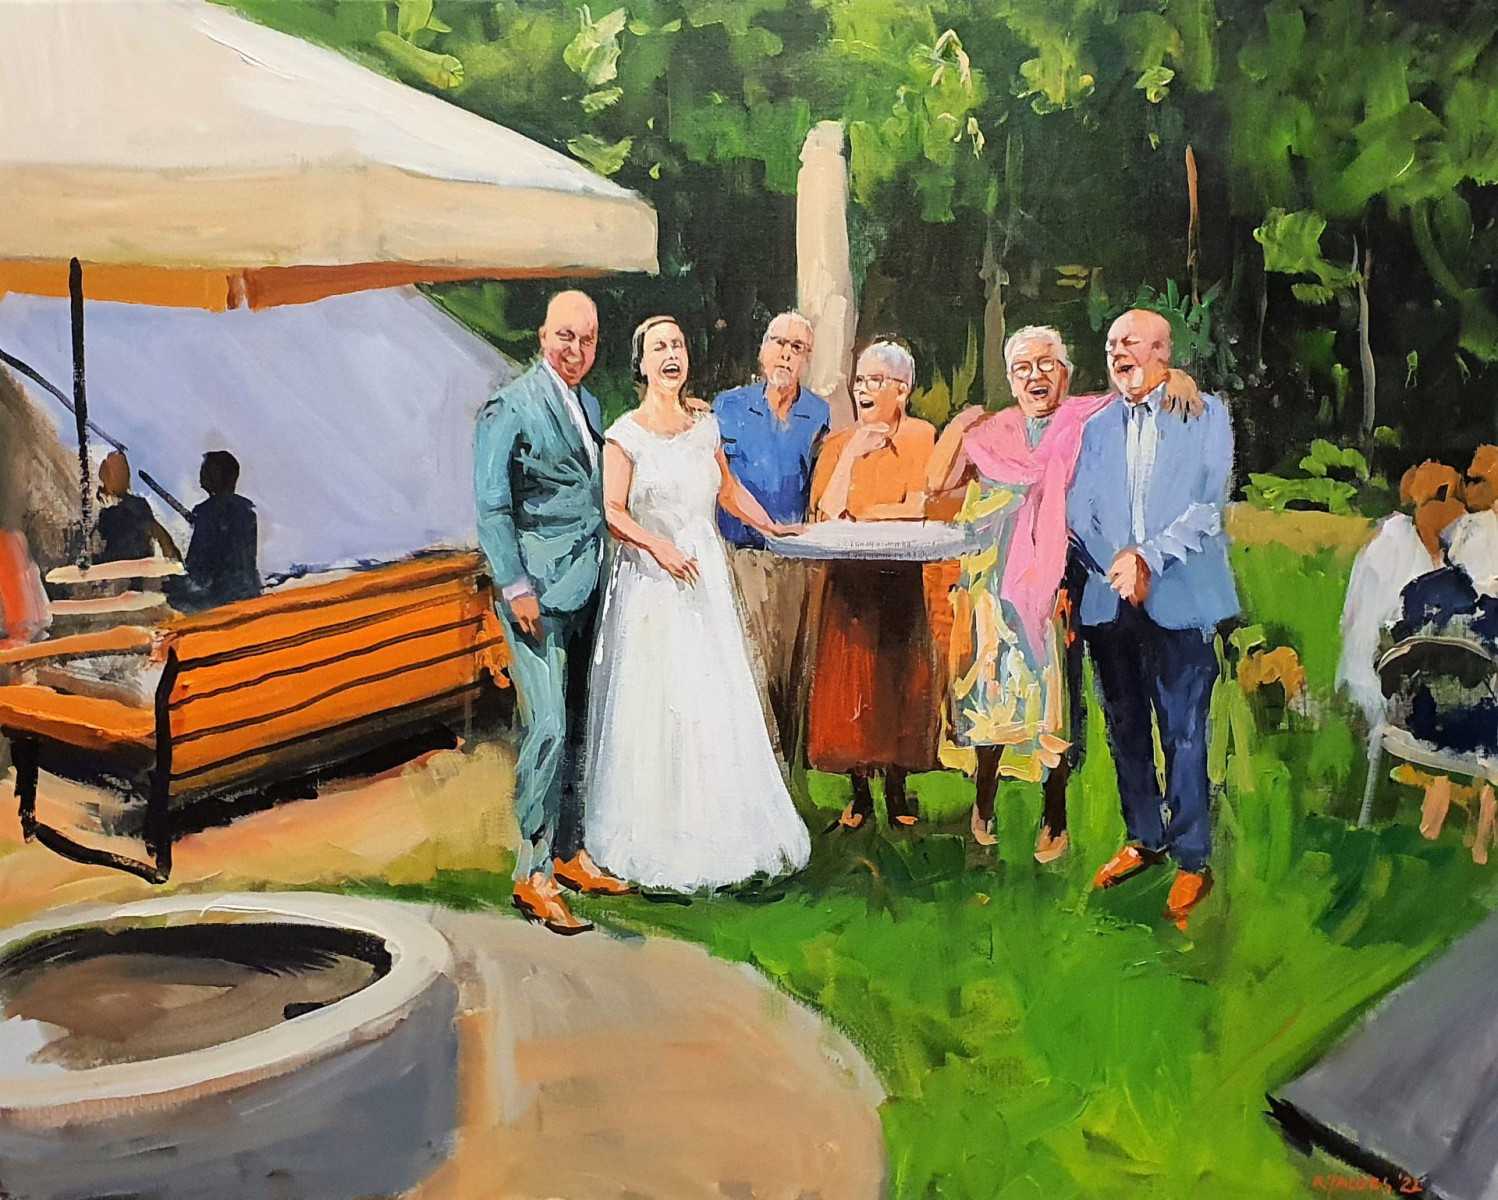 Rob Jacobs schildert doek van 80x100cm tijdens de trouwceremonie in Hemrik, Friesland.